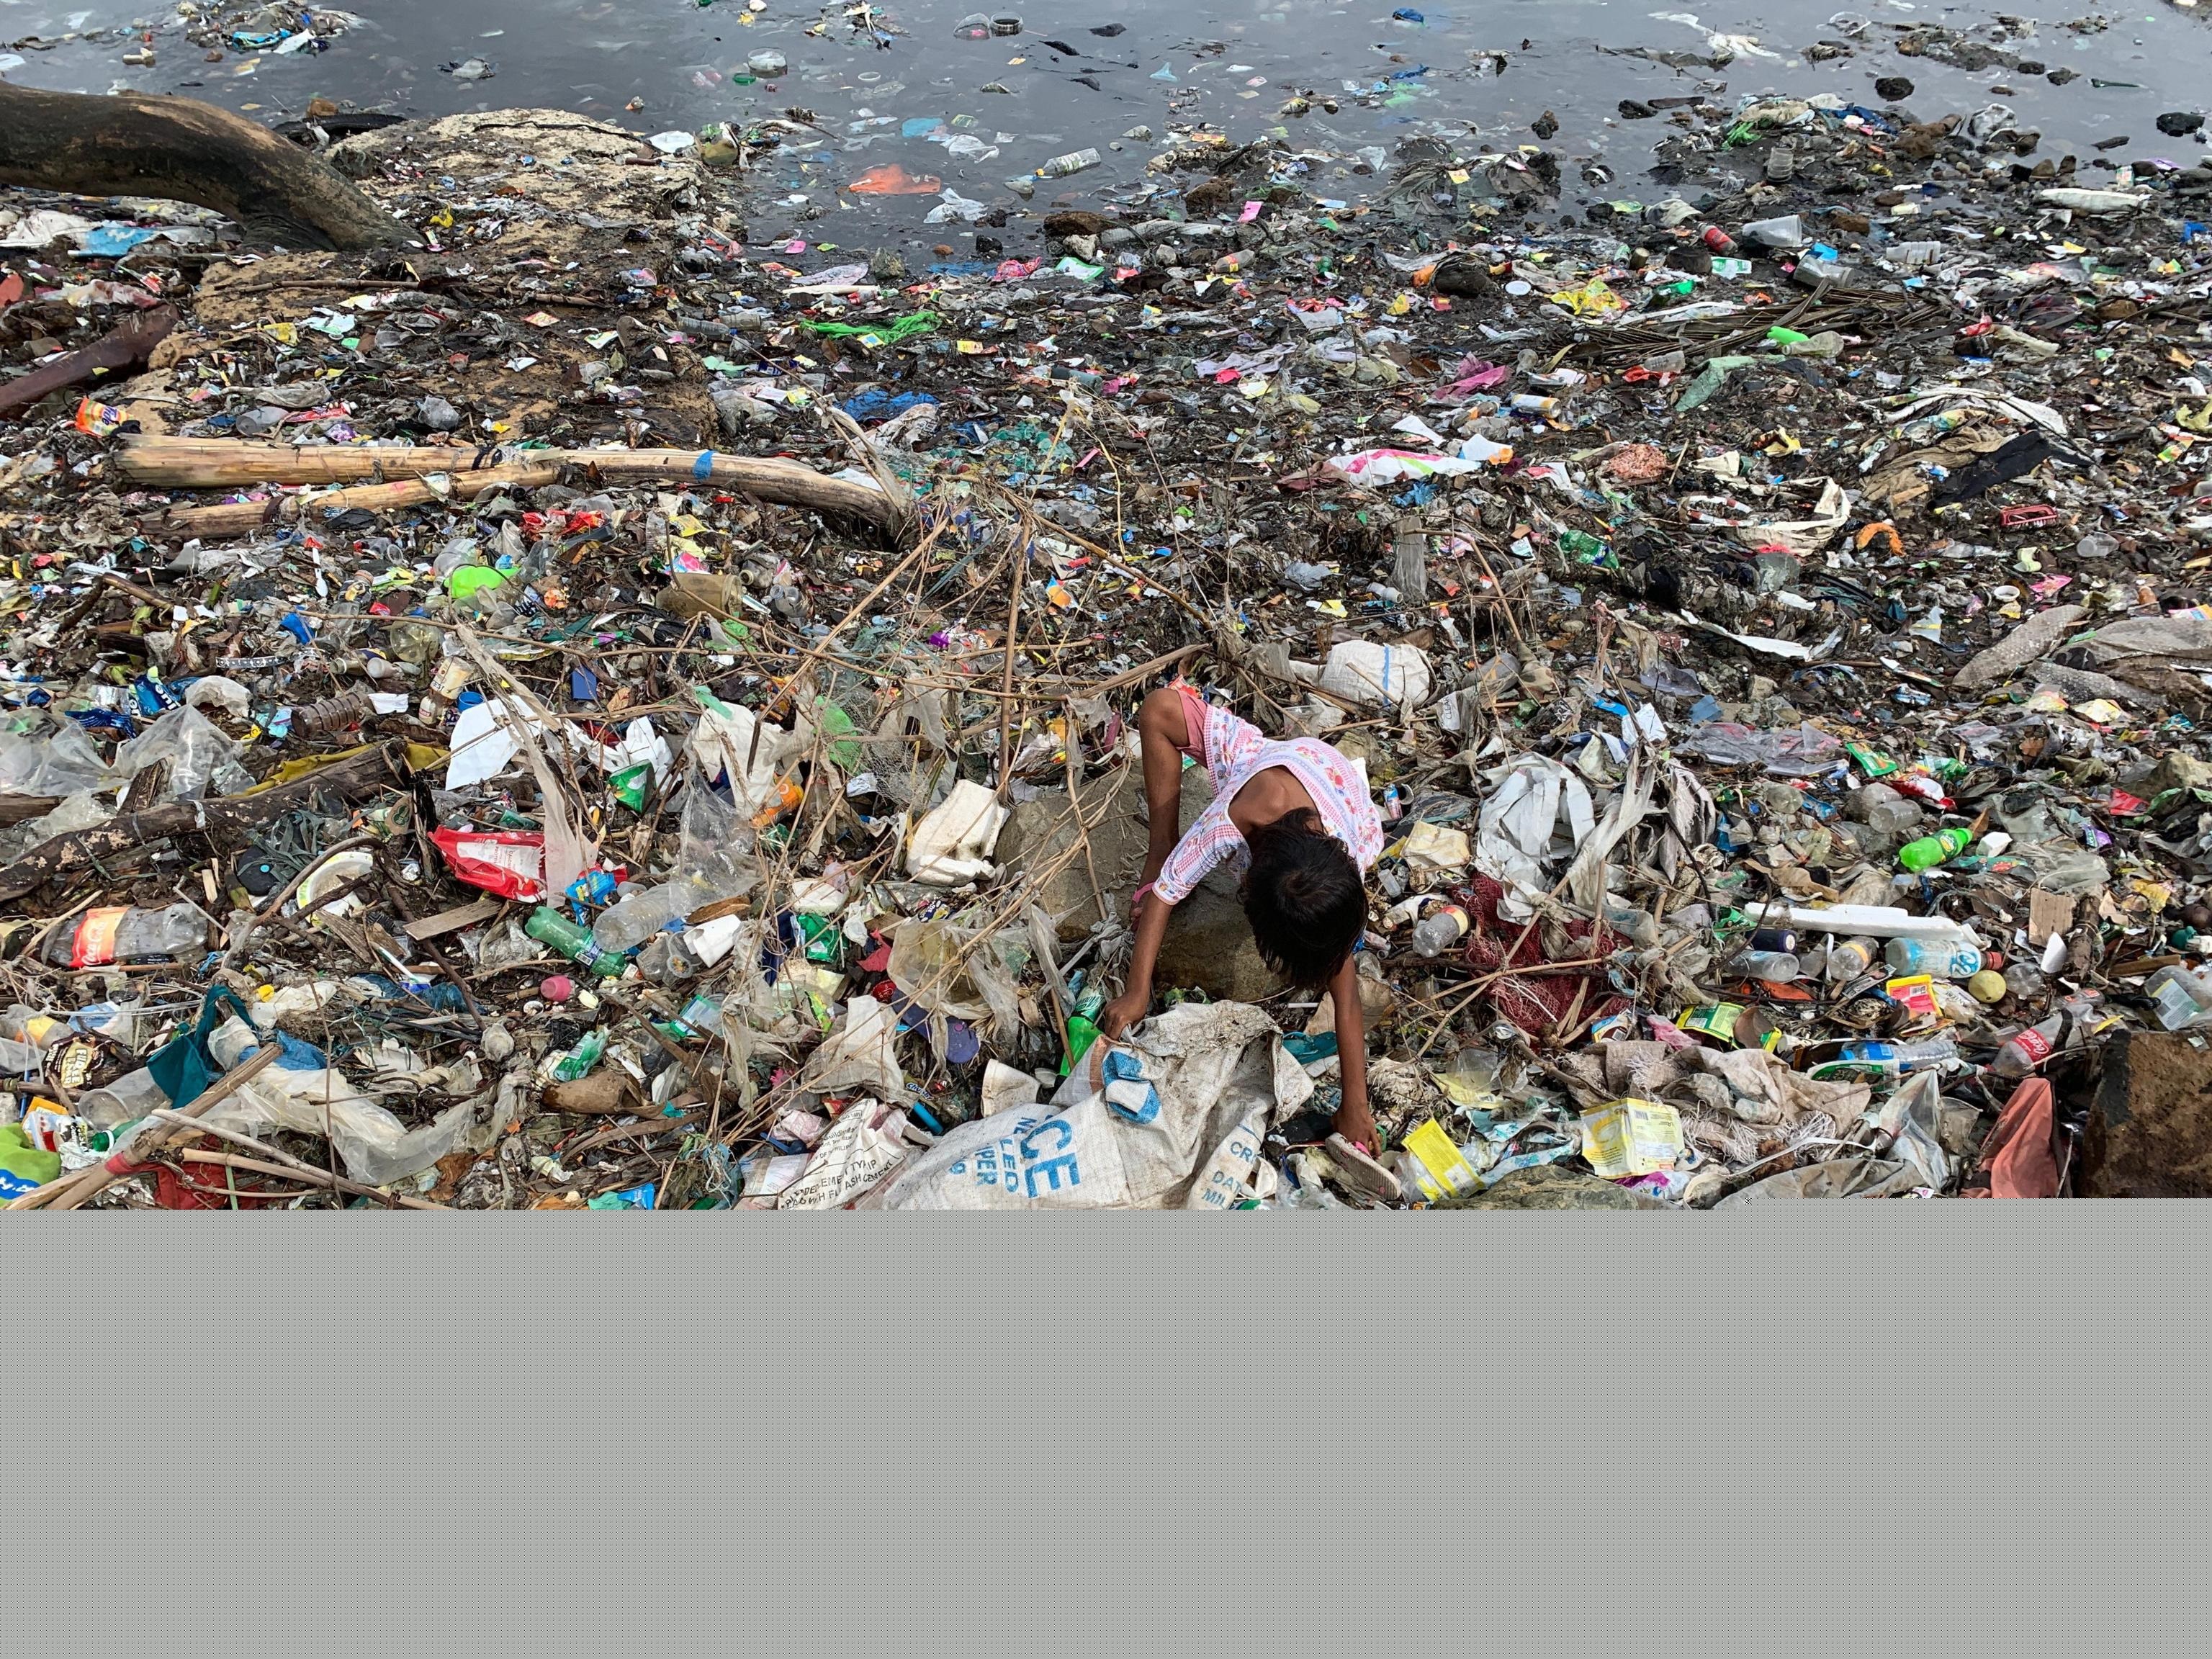 Il problema dell'inquinamento da plastiche potrebbe addirittura peggiorare nel prossimo futuro. Economie in crescita come quella delle Filippine portano ad un aumento dei redditi e all’esplosione della domanda di prodotti di consumo e alla conseguente creazione di rifiuti.